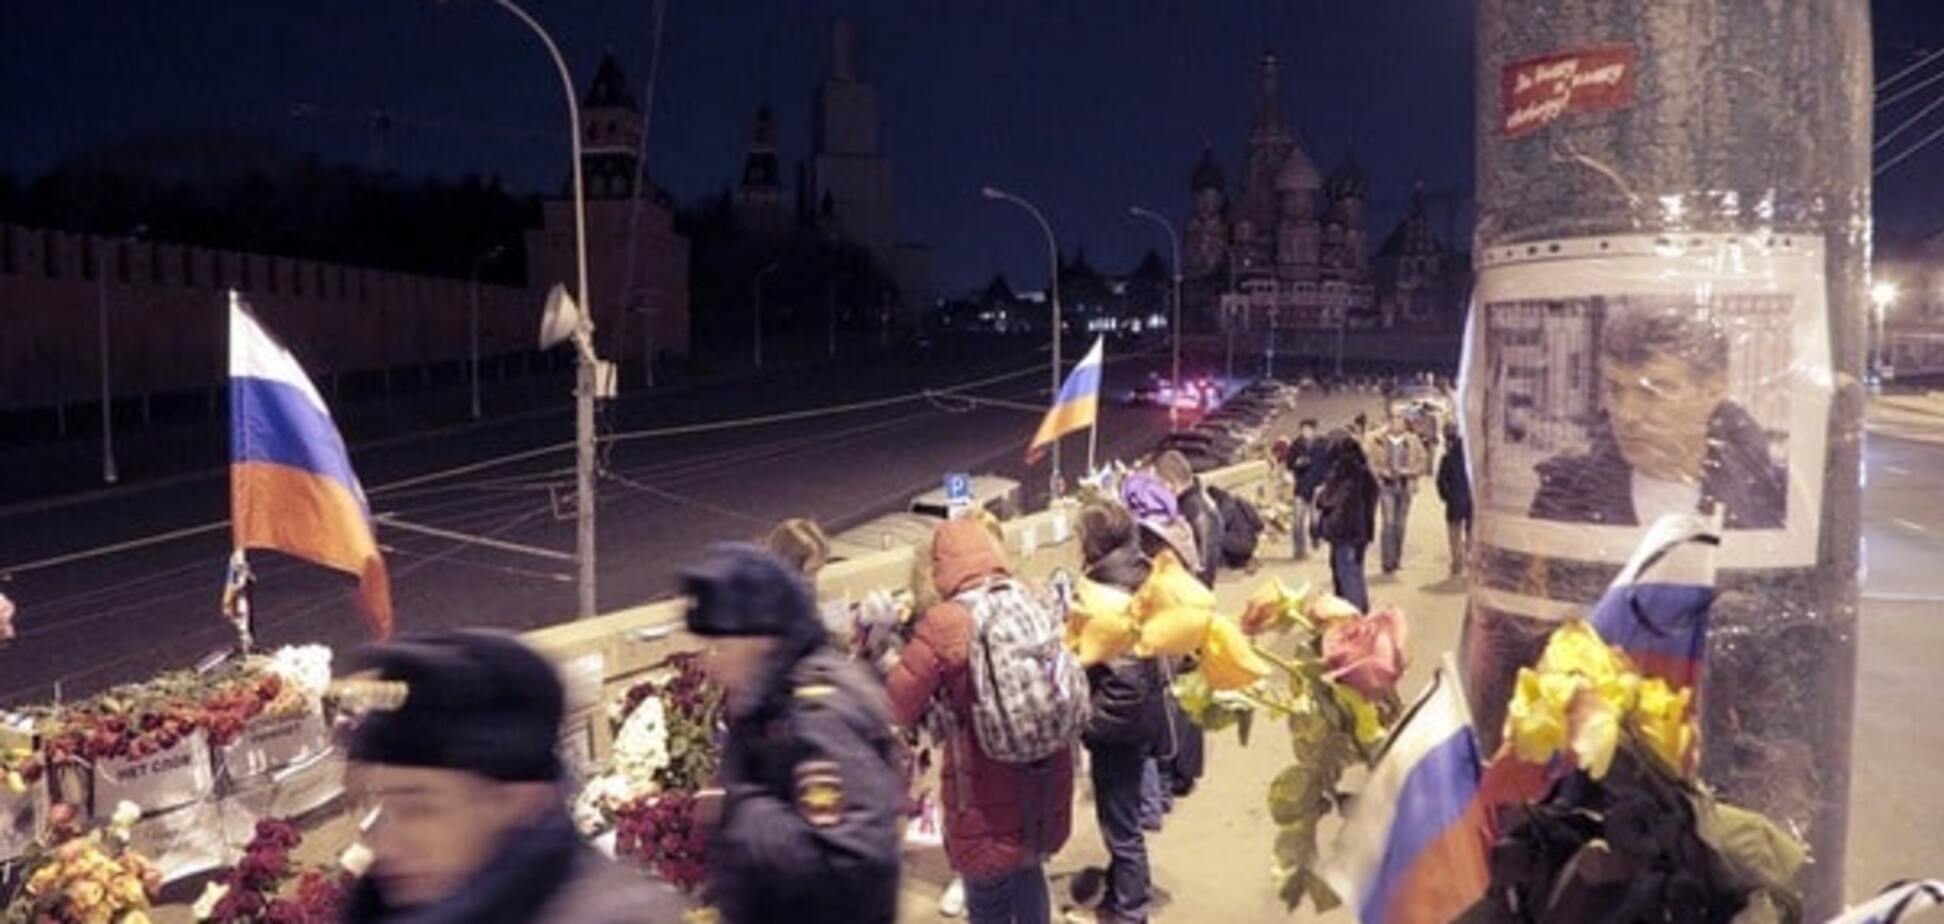 'Не сберёг Бог': Орлуша написал стих к годовщине убийства Немцова